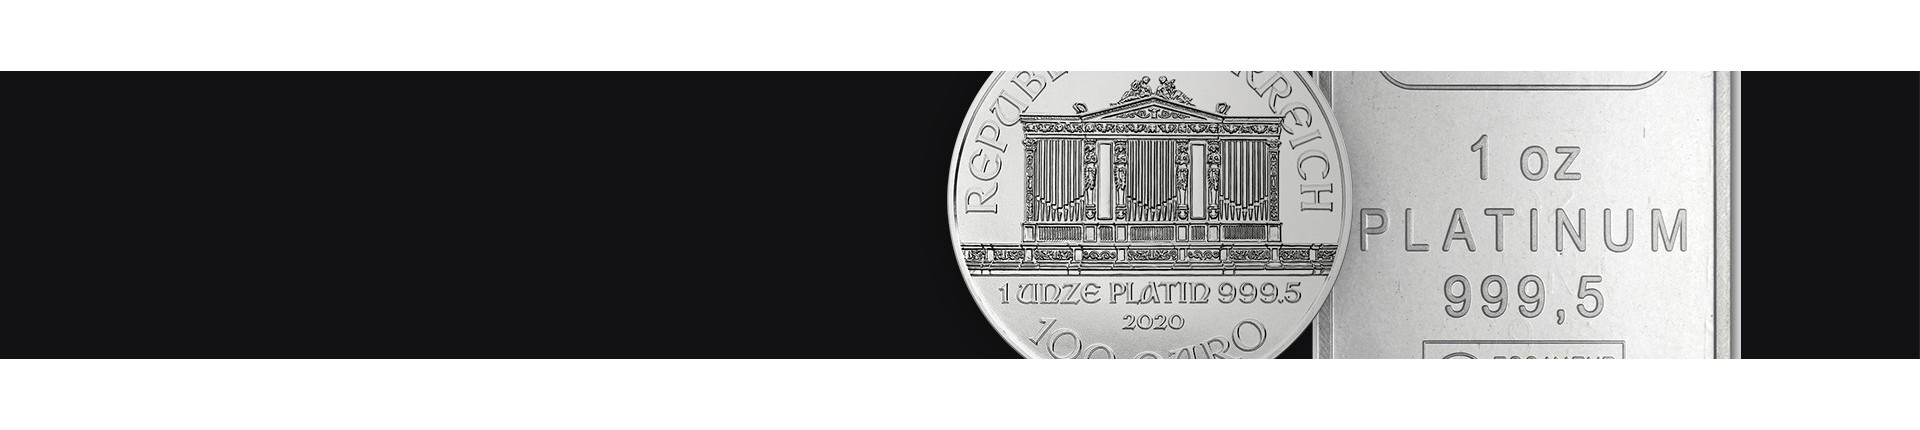 Platina munten kopen? | Veilig & betrouwbaar | Goudwisselkantoor